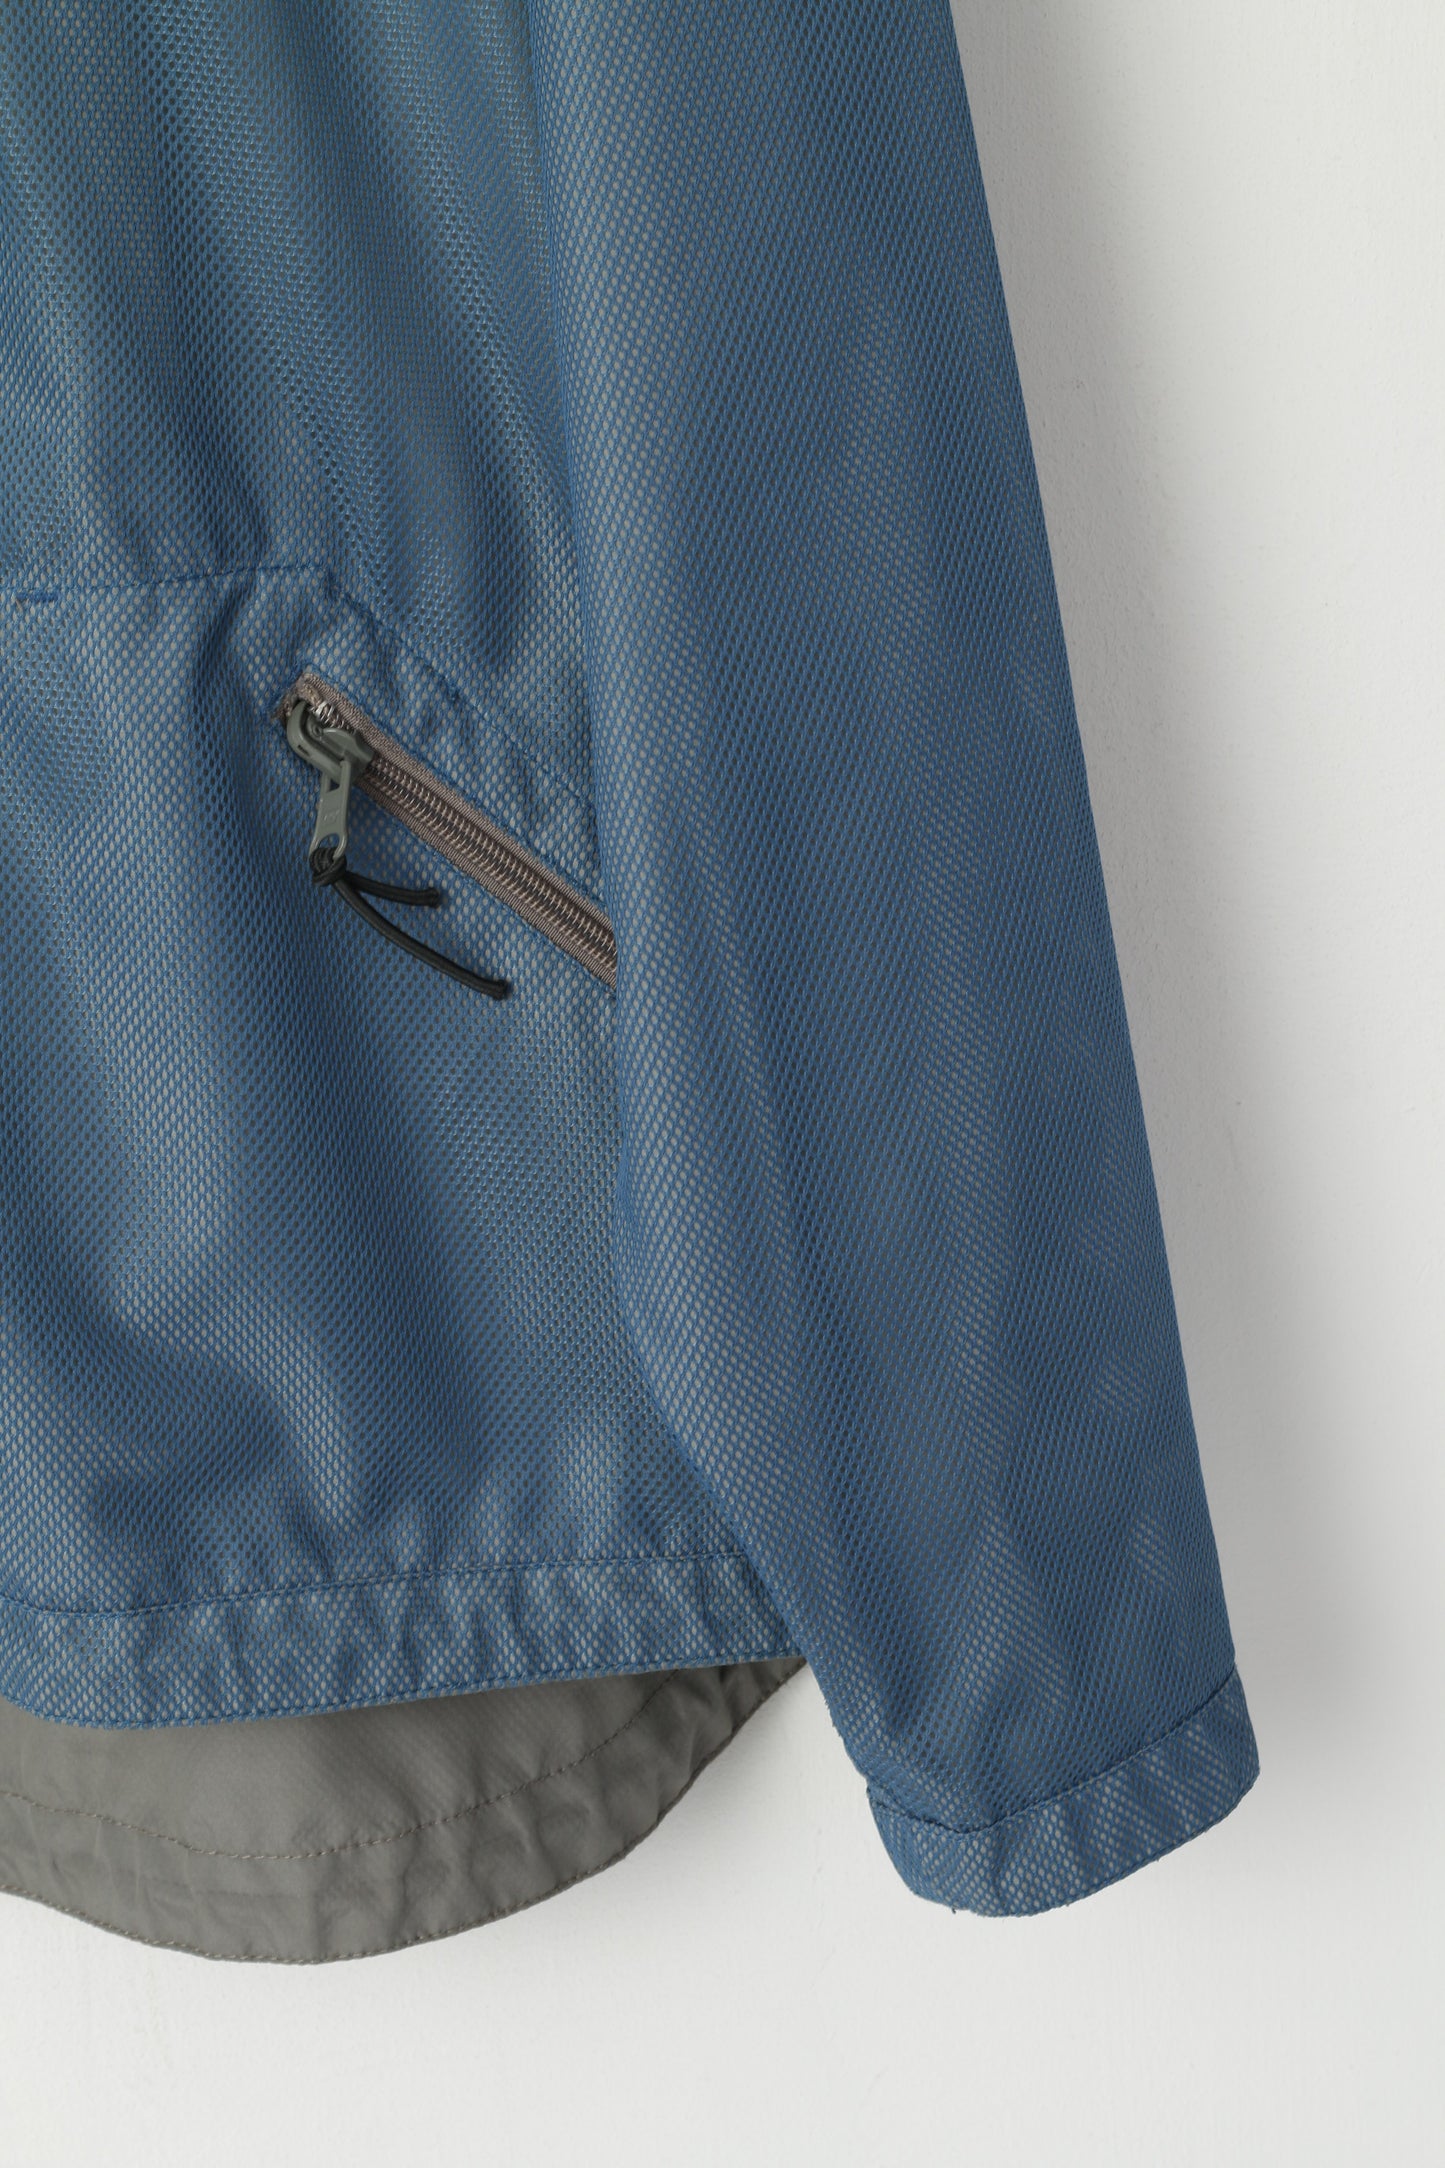 Calvin Klein Jeans Men XL Jacket Blue Grey Double-Sided Lightwieght Sport Zip Up Top